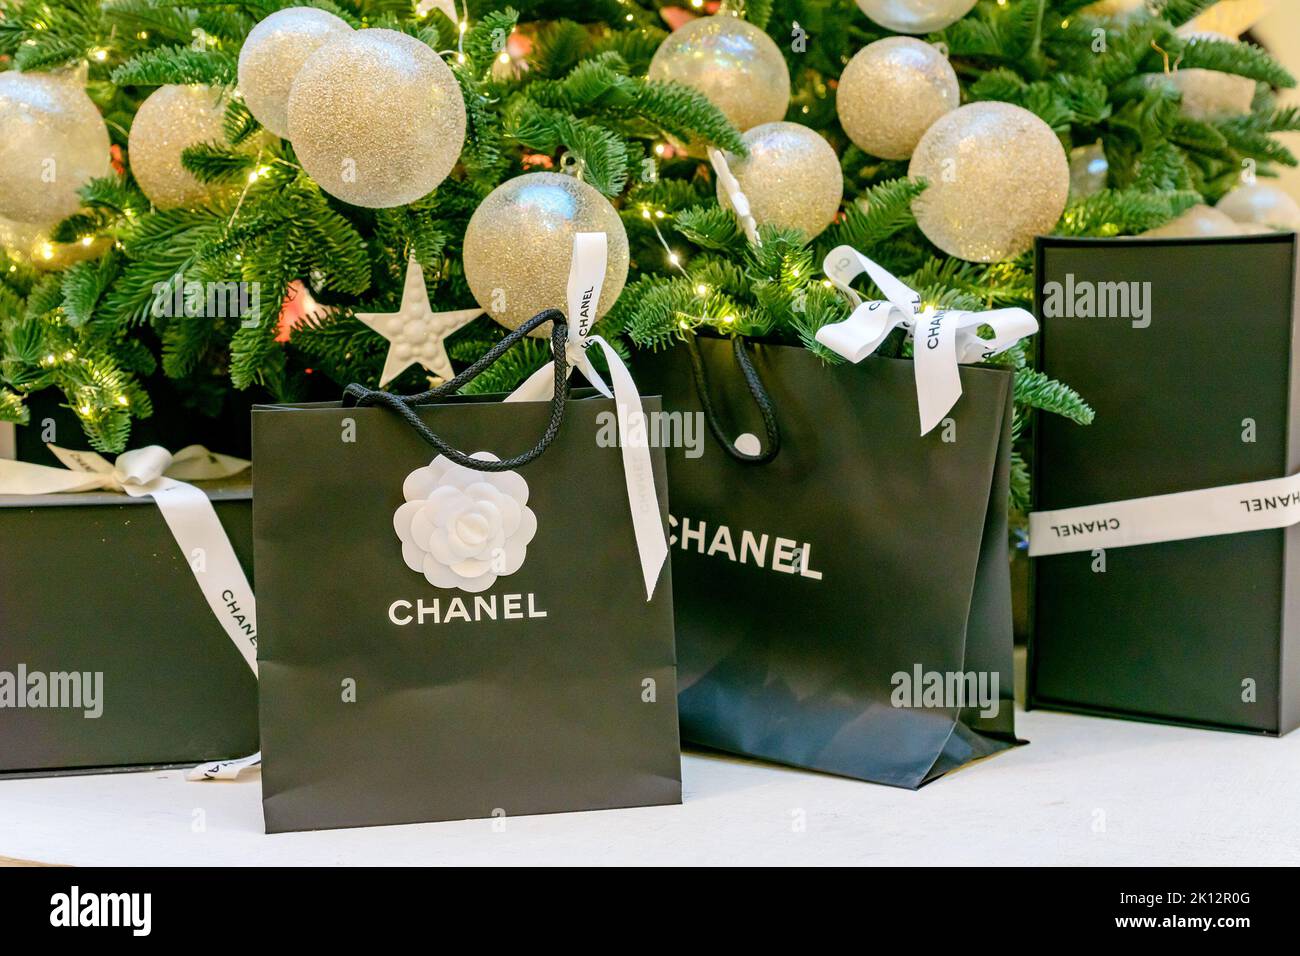 Mosca, Russia - 15 dicembre 2021 - logo Chanel su sacchetti di carta nera con regali sotto l'albero di natale. Lussuoso marchio di abbigliamento, accessori e cos Foto Stock